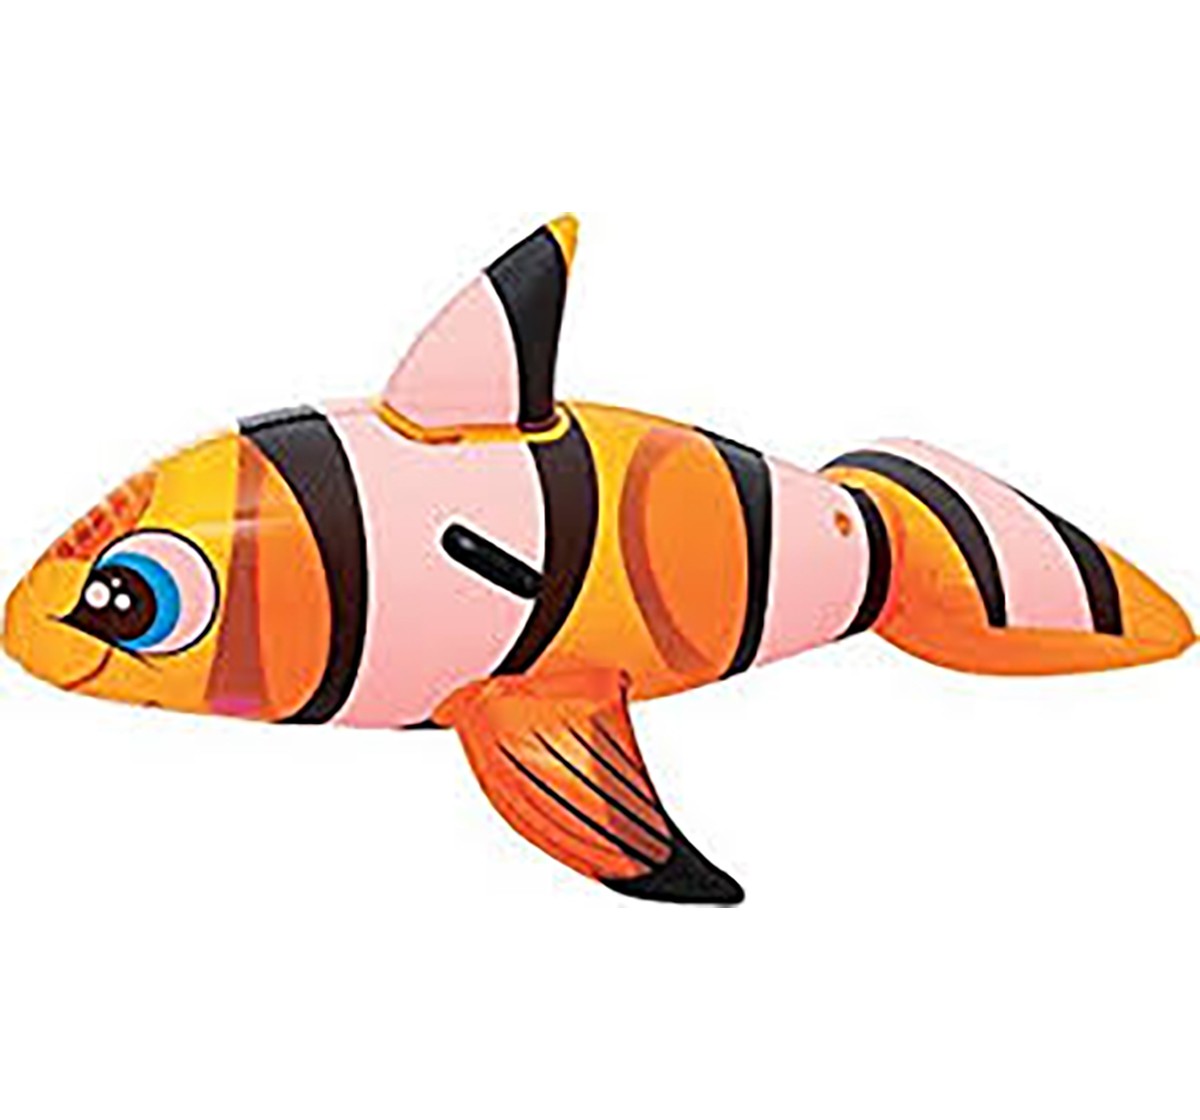 Bestway Fish Ride On - Orange Outdoor Leisure for Kids age 3Y+ (Orange)